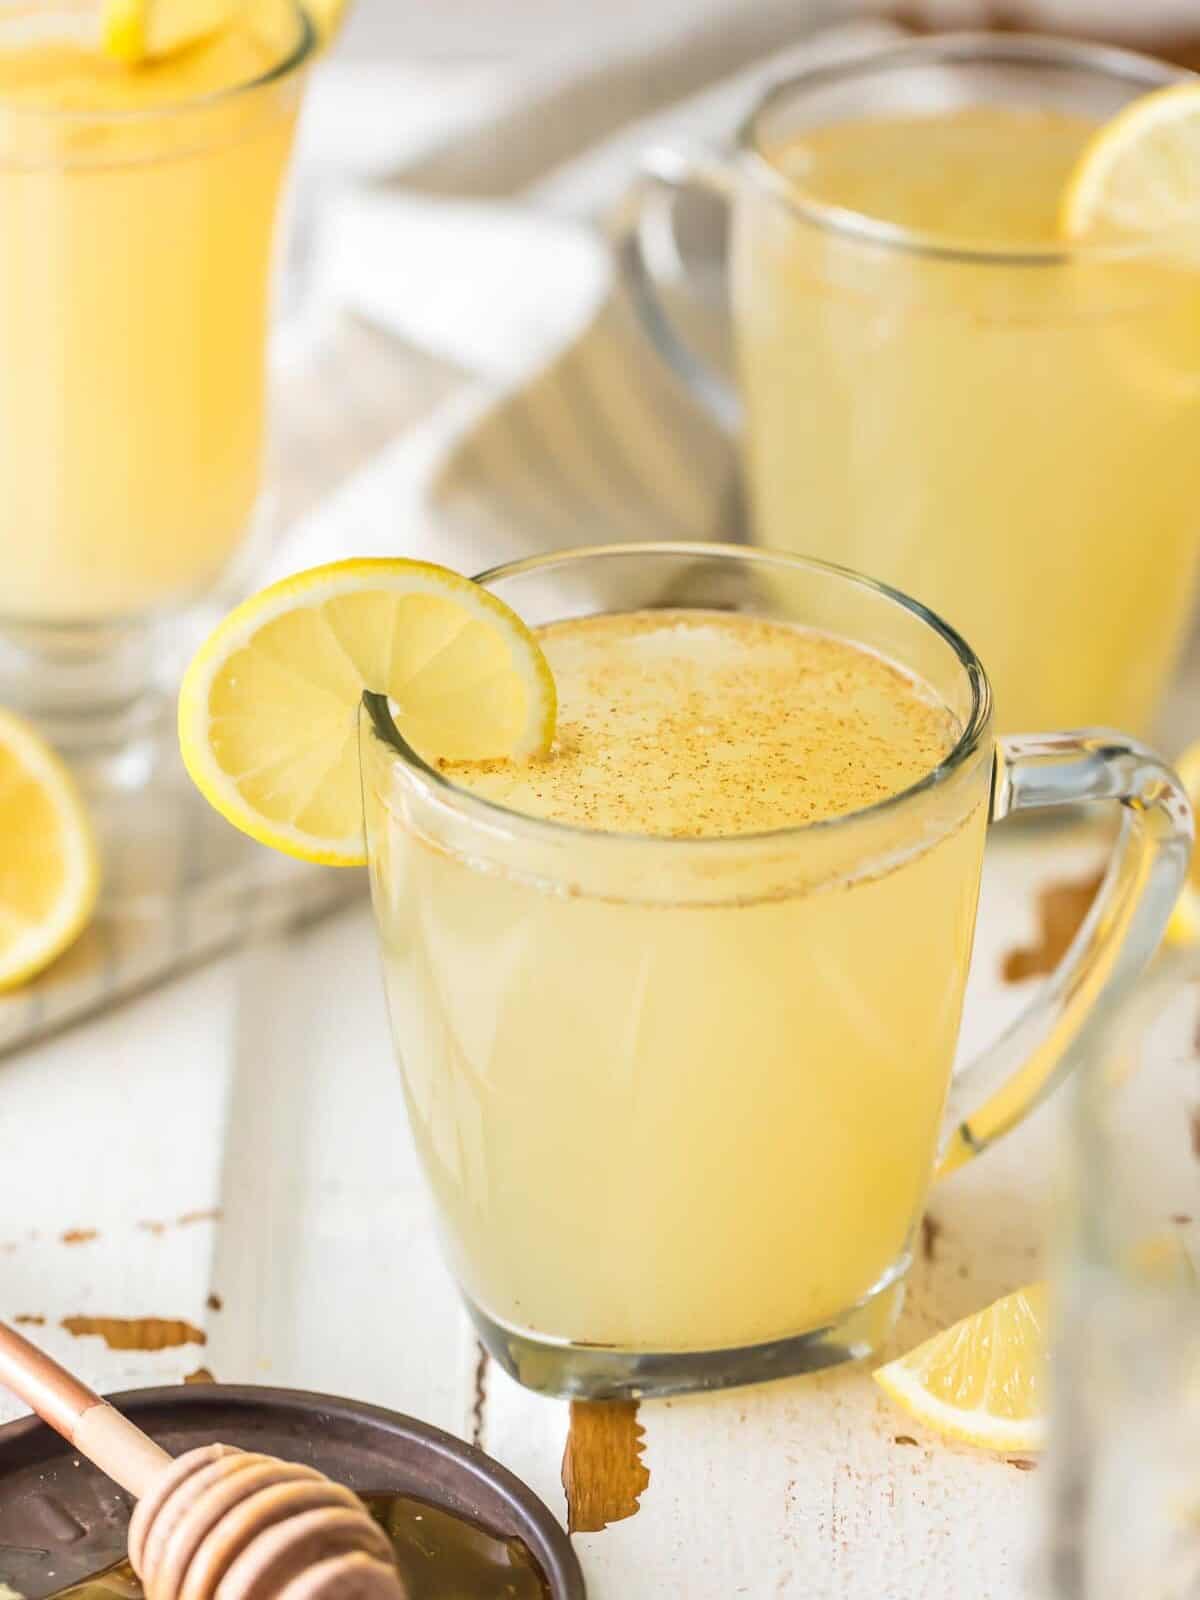 Receita caseira de desintoxicação de limão: suco de limão, água quente, gengibre, pimenta caiena